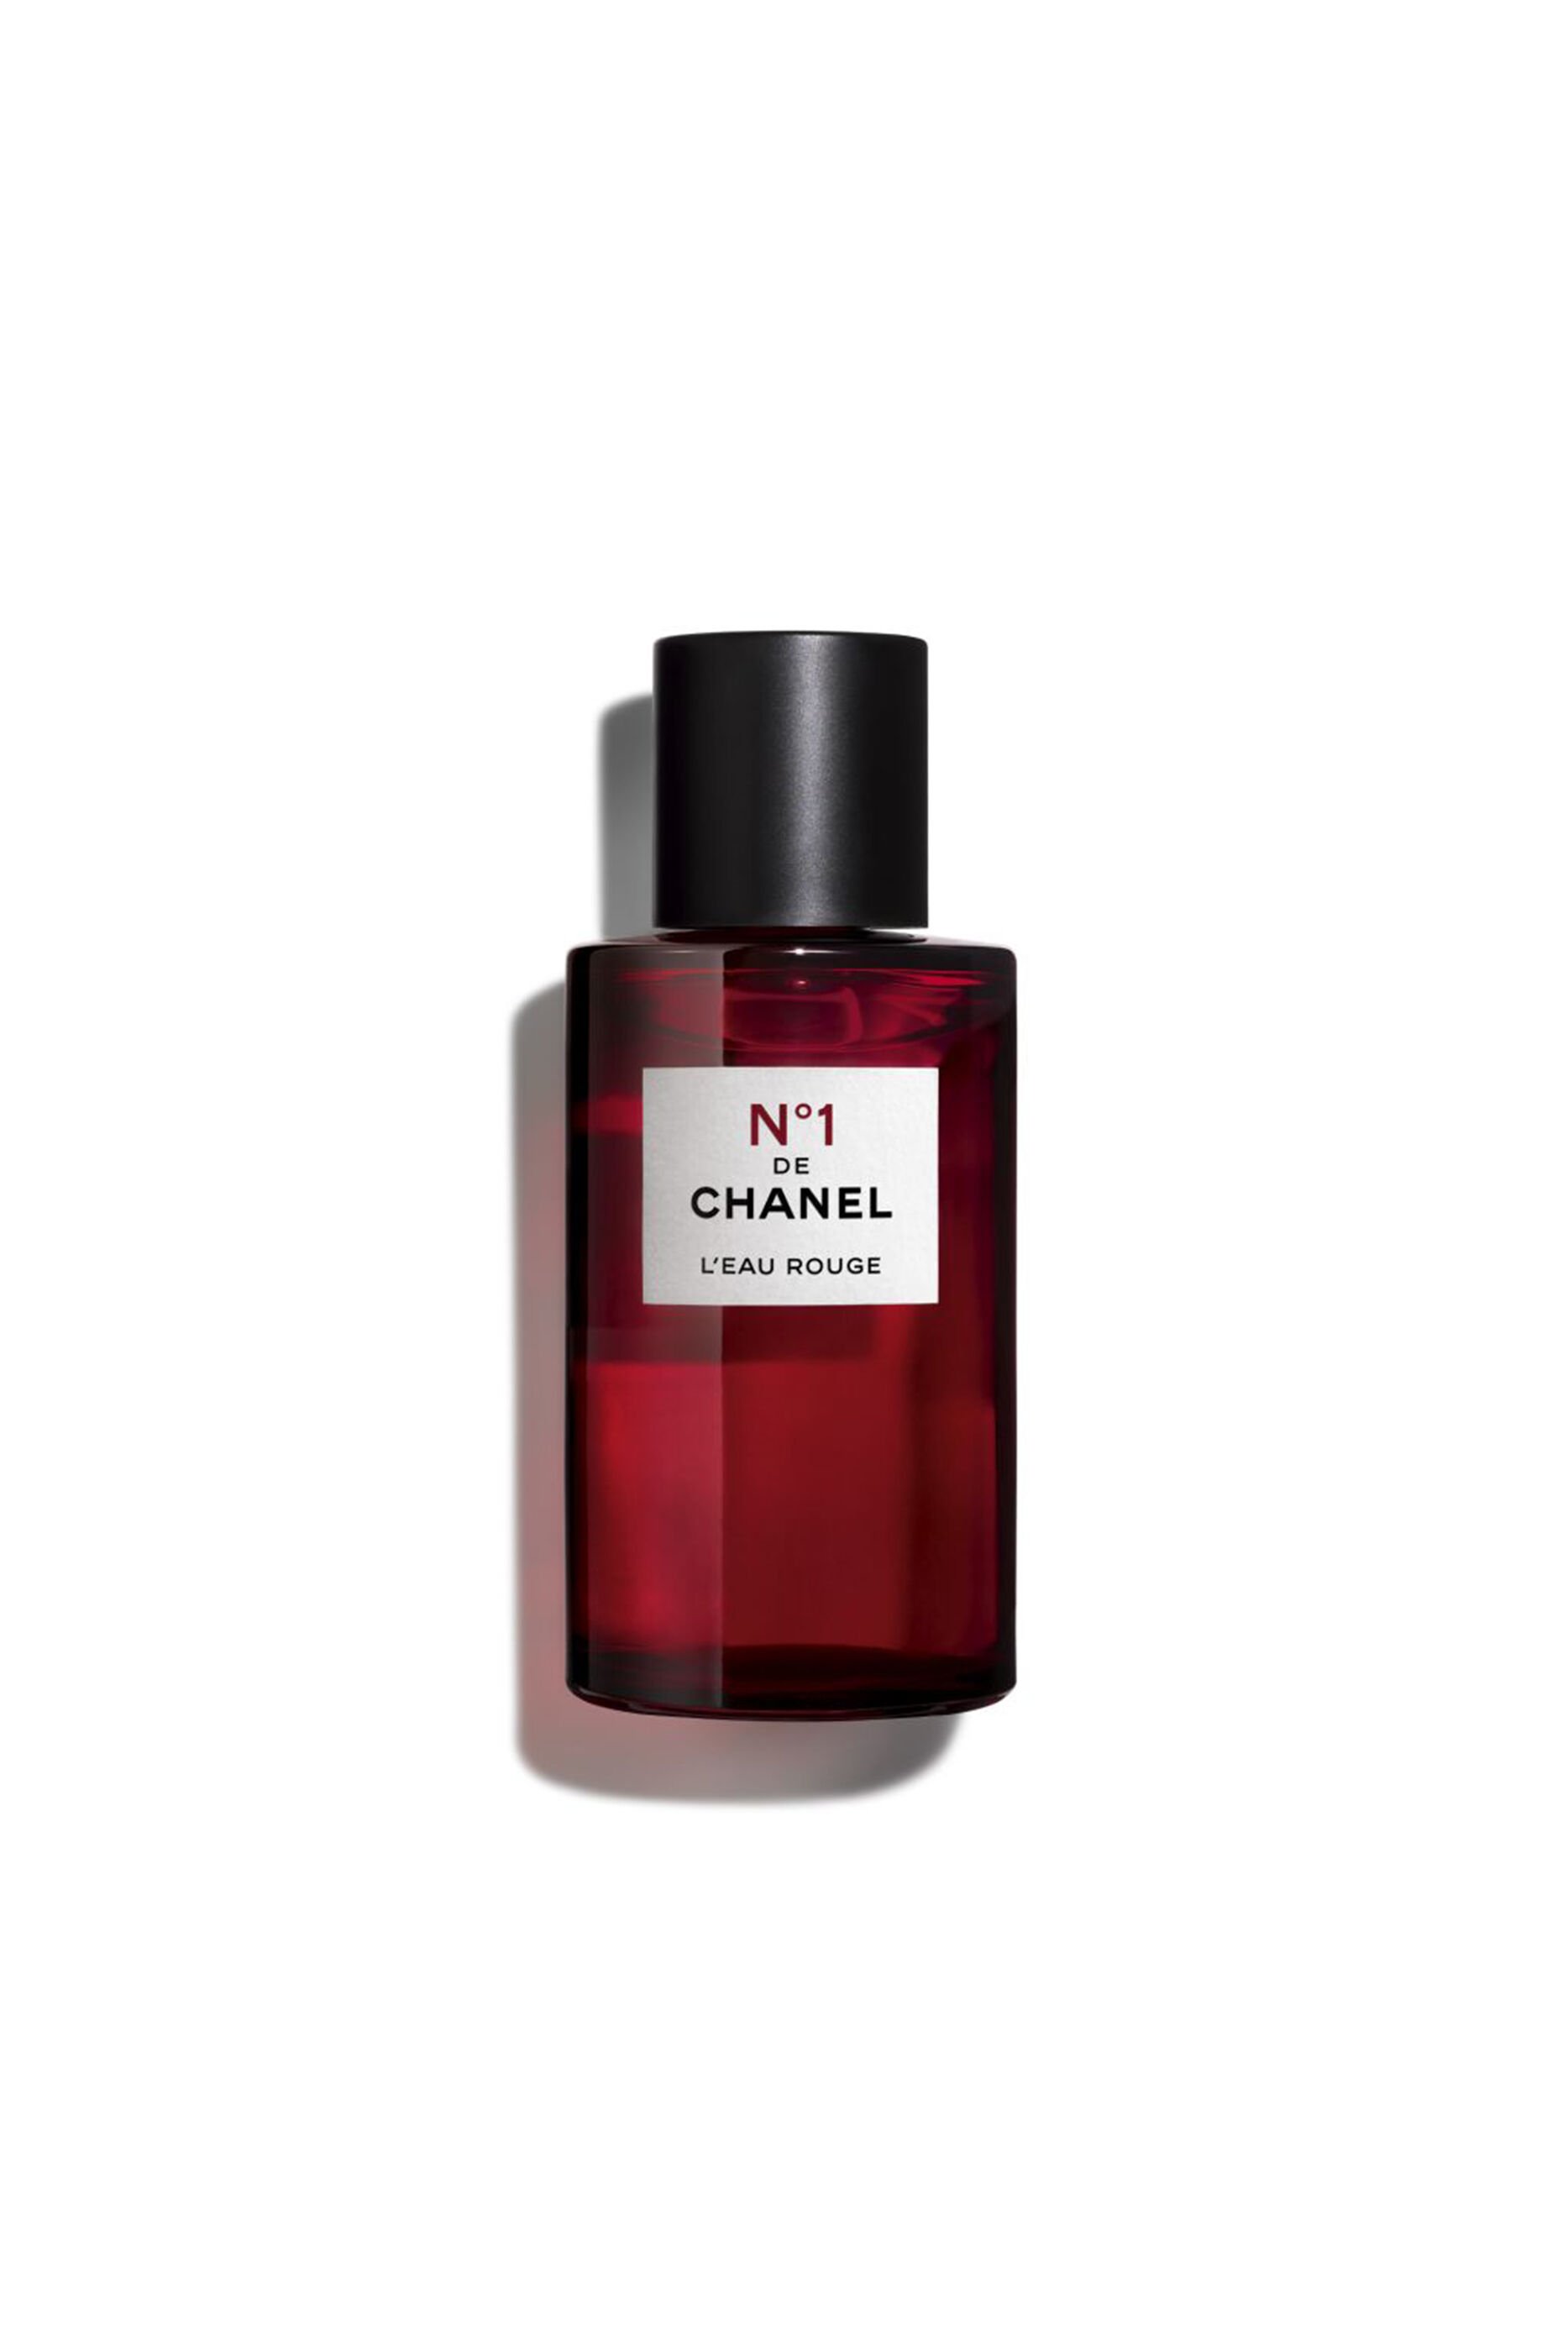 Buy Chanel Chance Tendre Eau De Parfum For Women  50ml Online  Shop  Beauty  Personal Care on Carrefour UAE